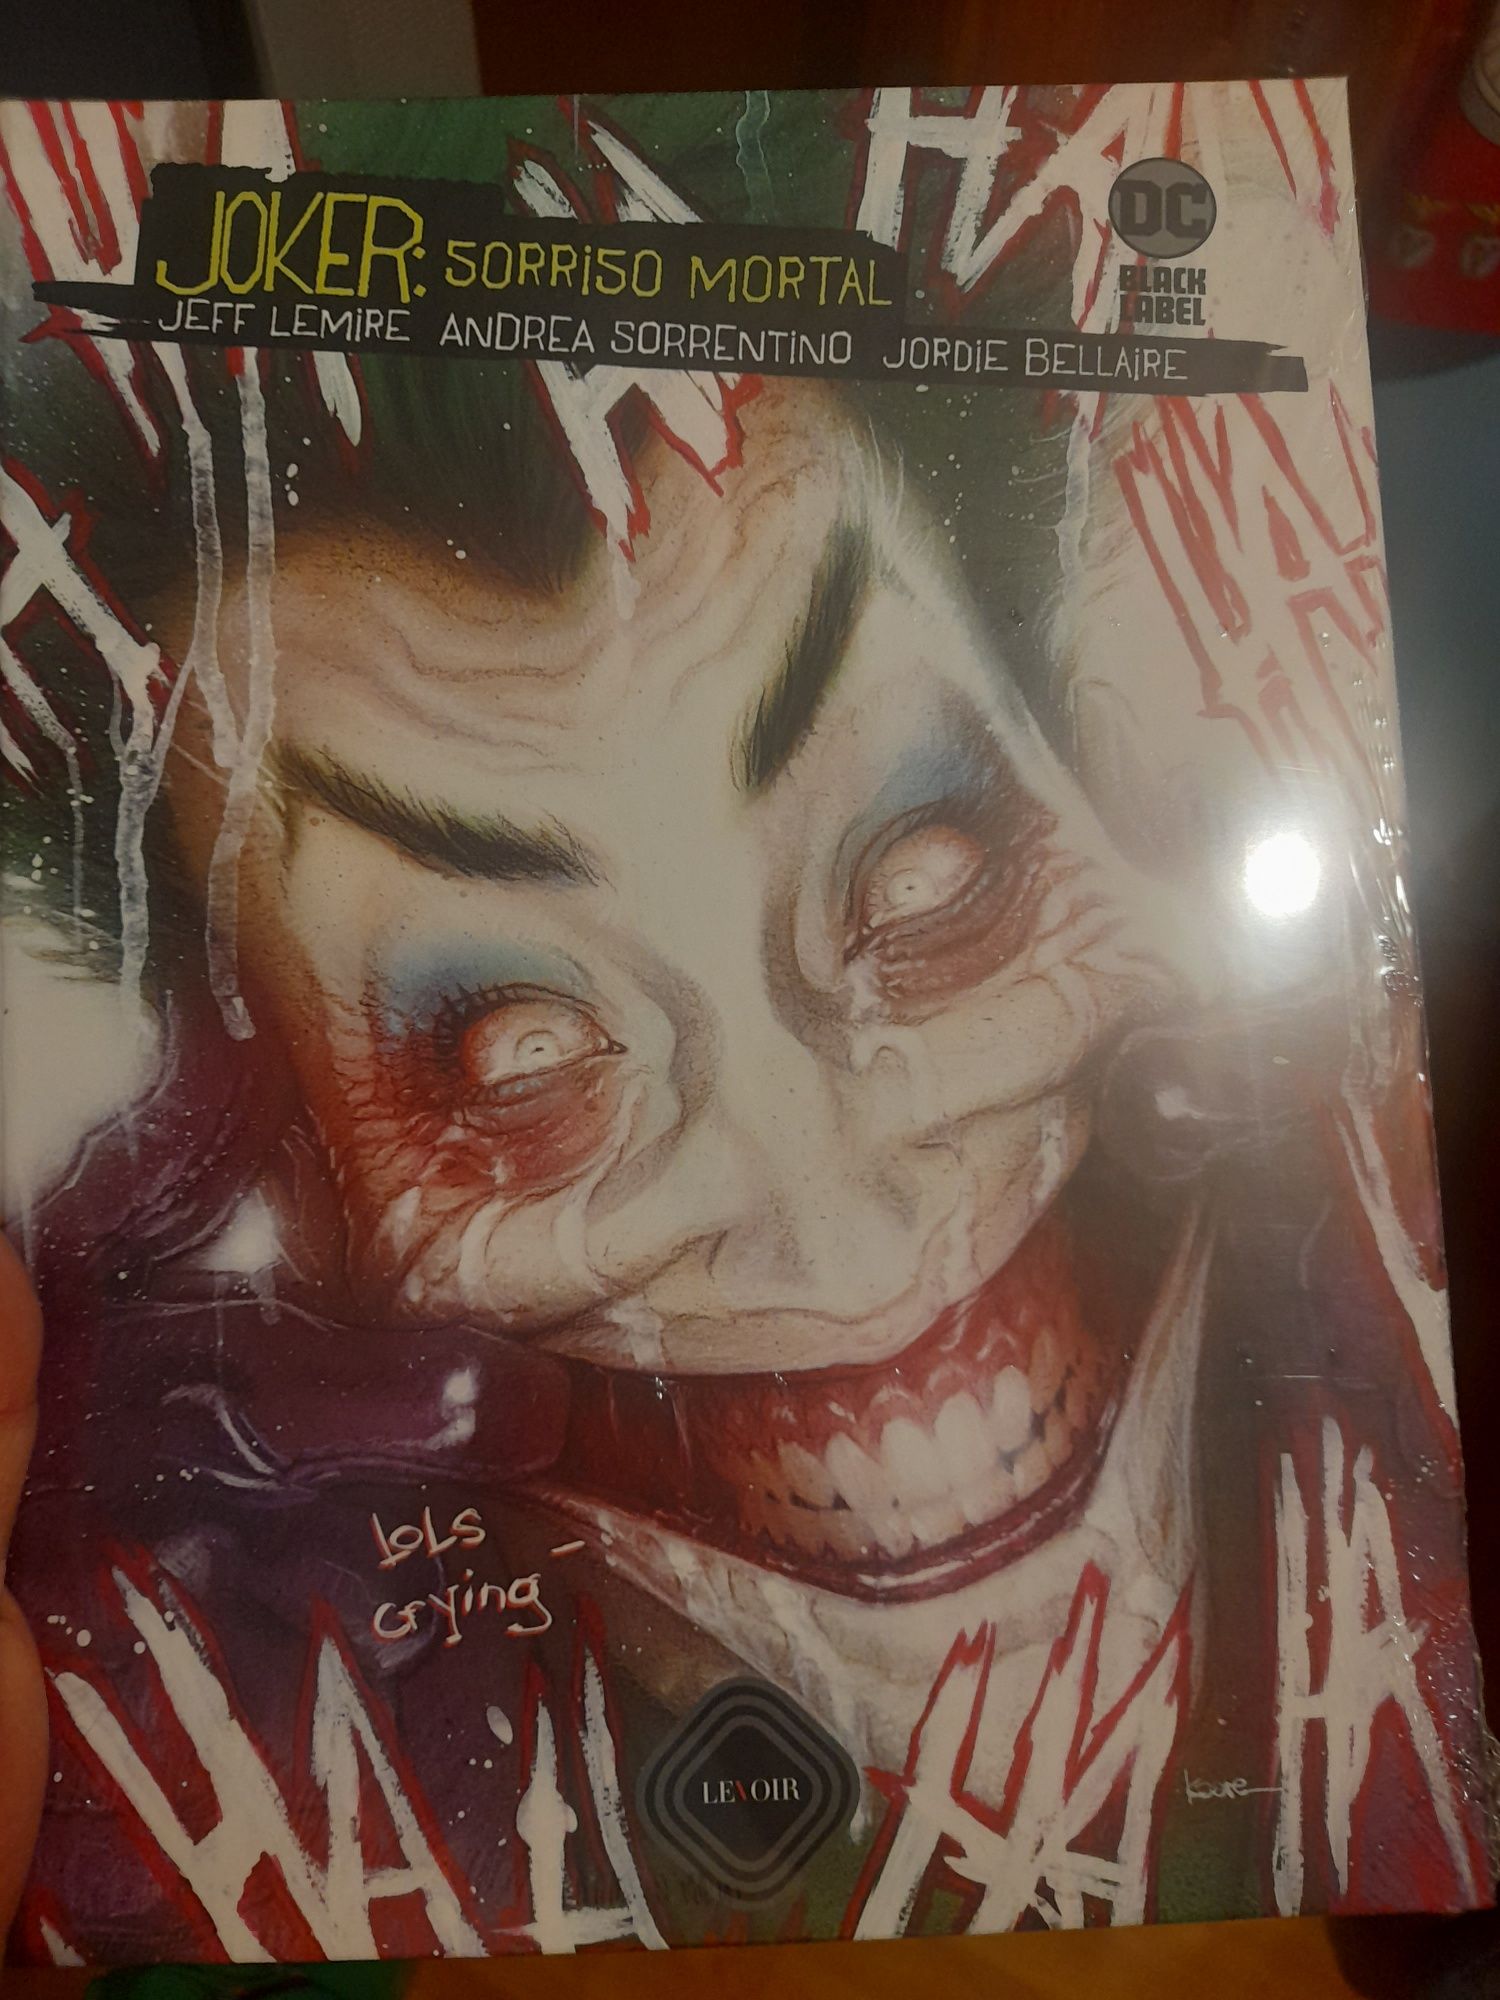 Joker sorriso mortal